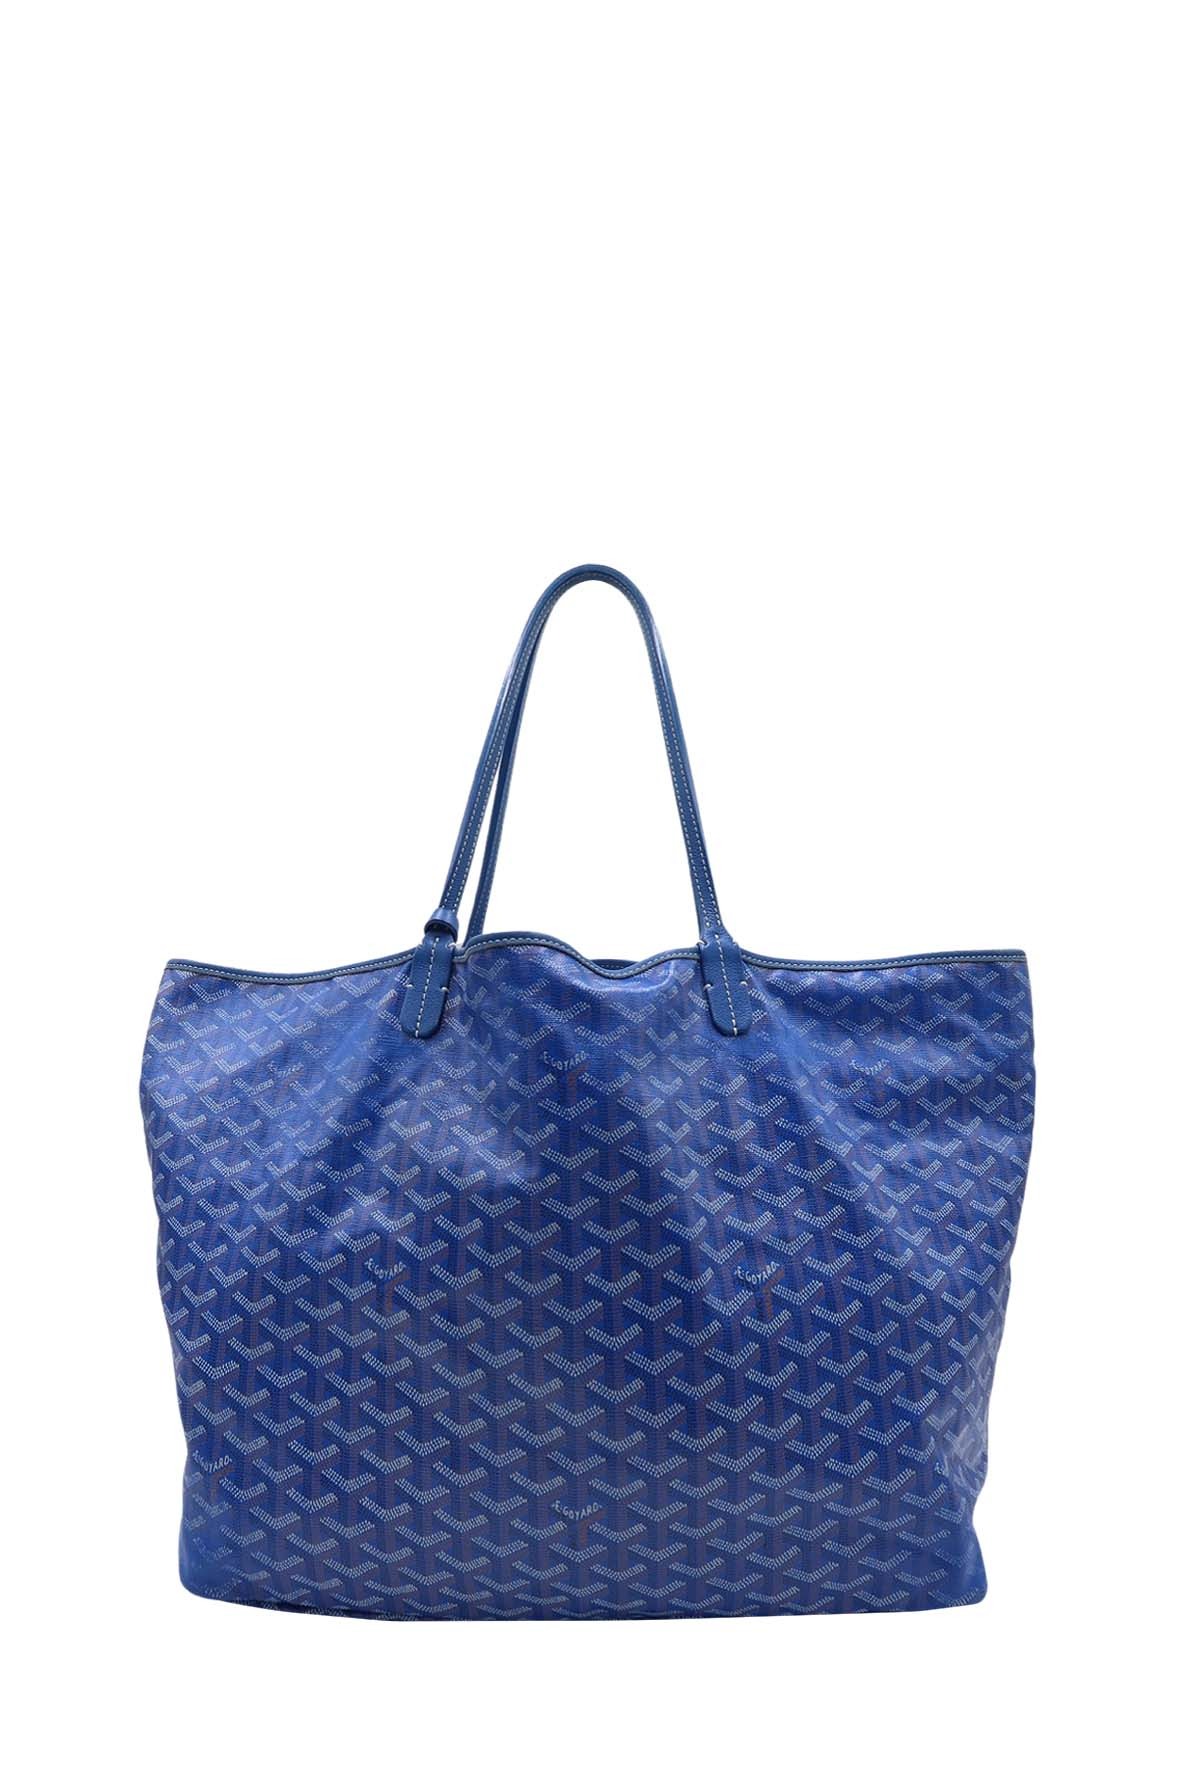 Goyard, Bags, Goyard Saint Louis Claire Voie Pm 29 Limited Edition Blue  Brand New